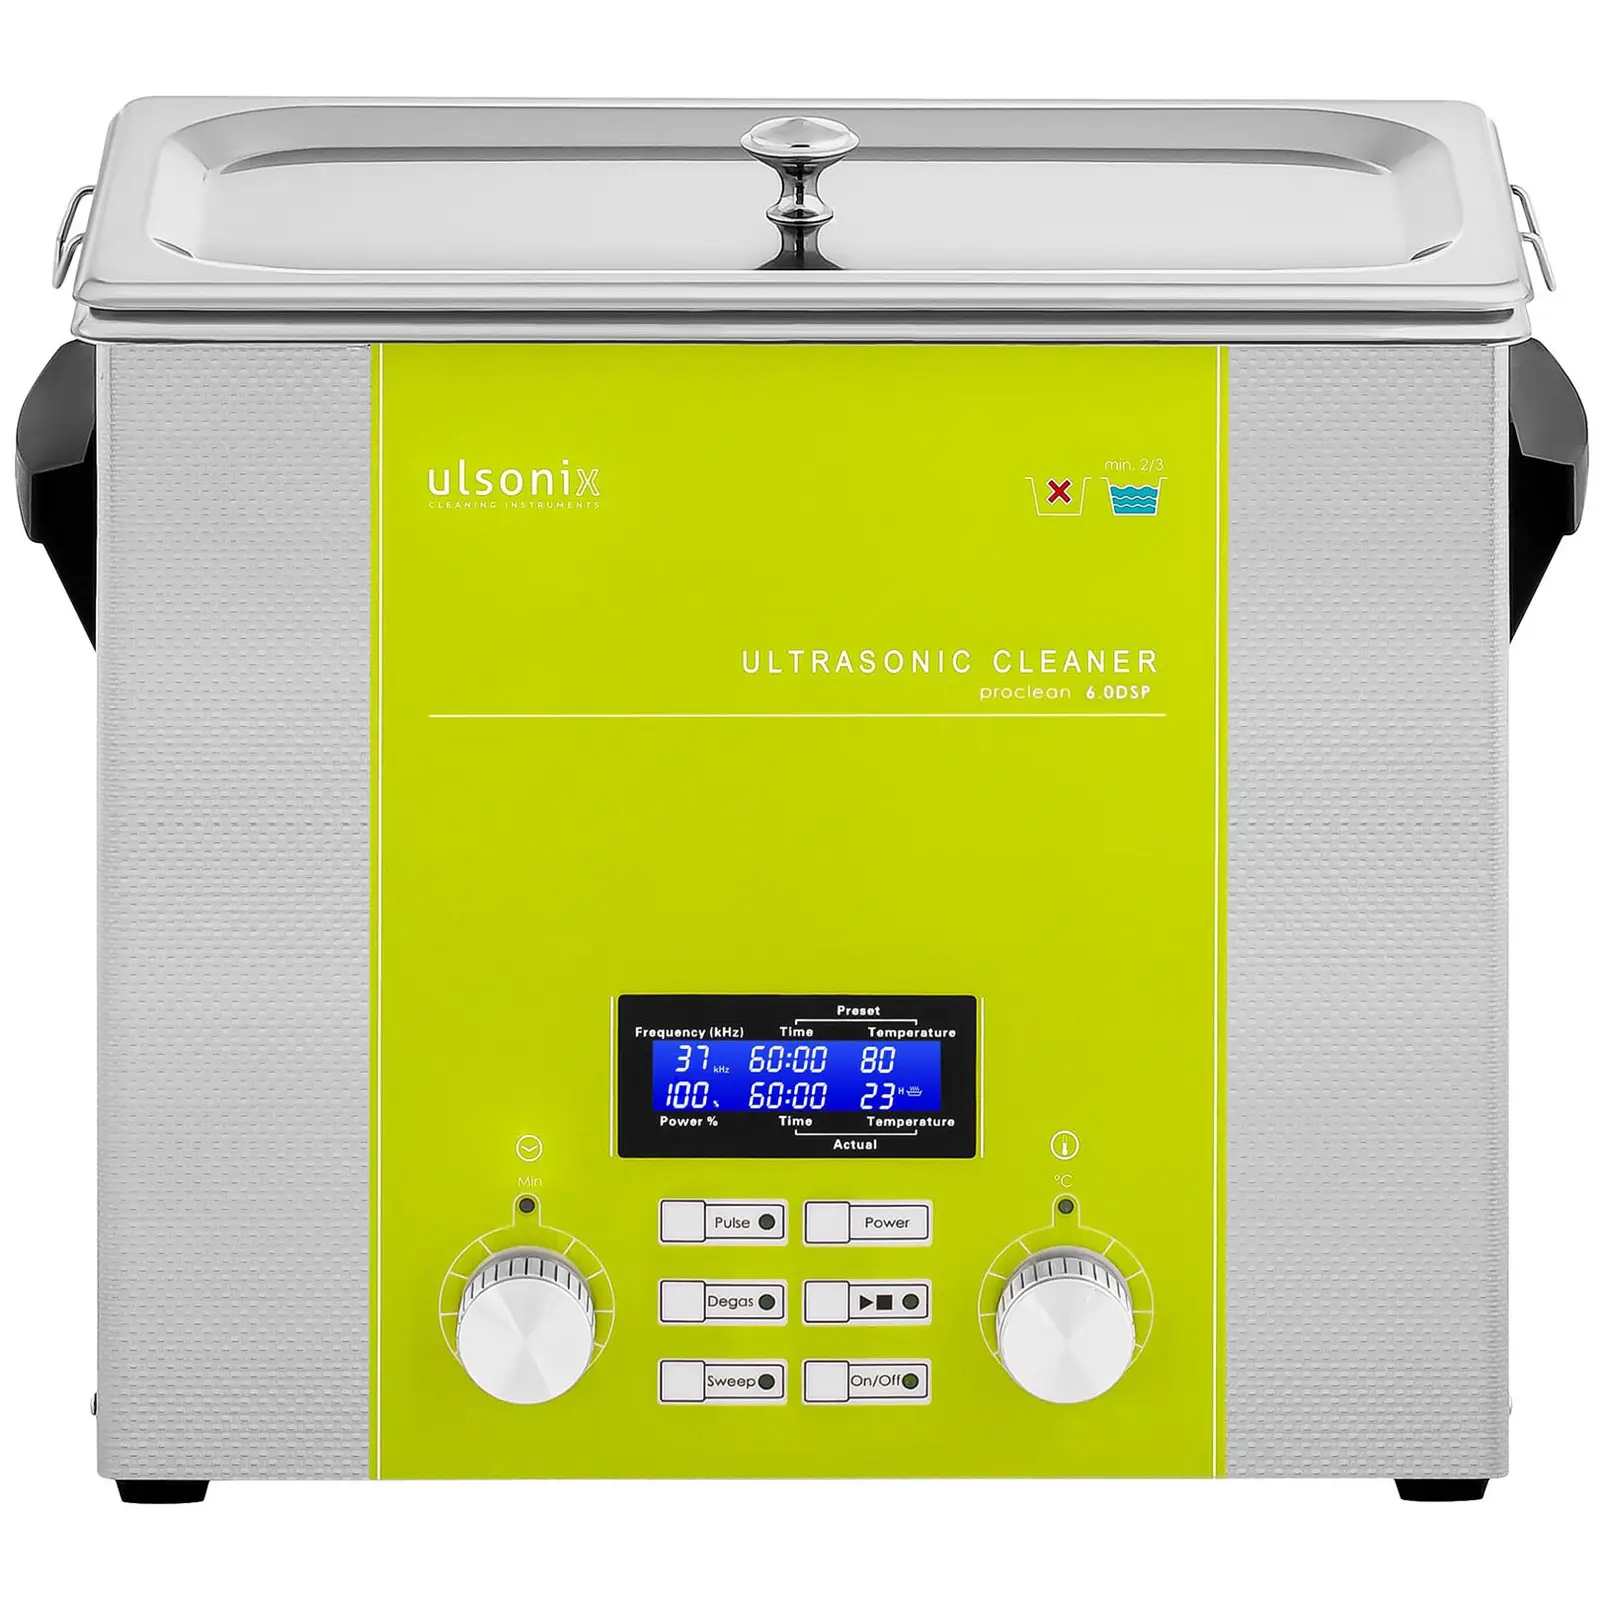 Myjka ultradźwiękowa - 6 litrów - 240 W - DSP